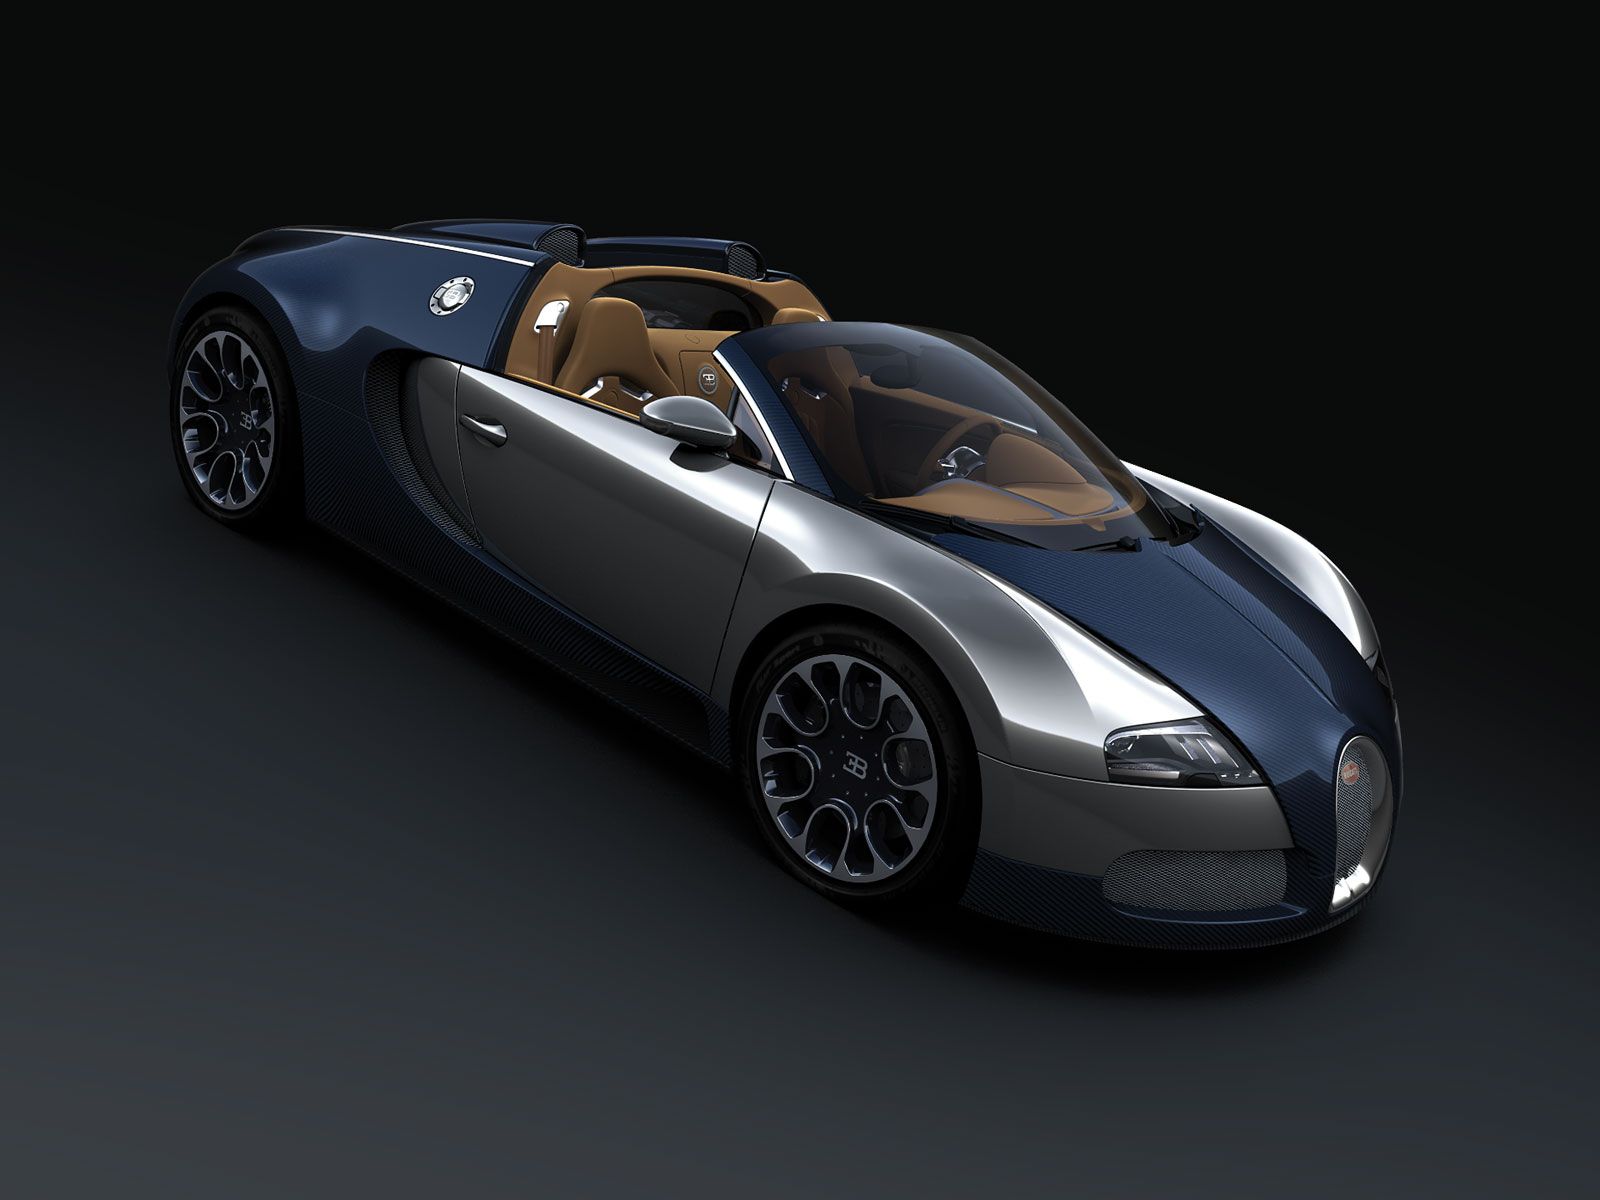 2010 Bugatti Veyron Grand Sport Sang Bleu